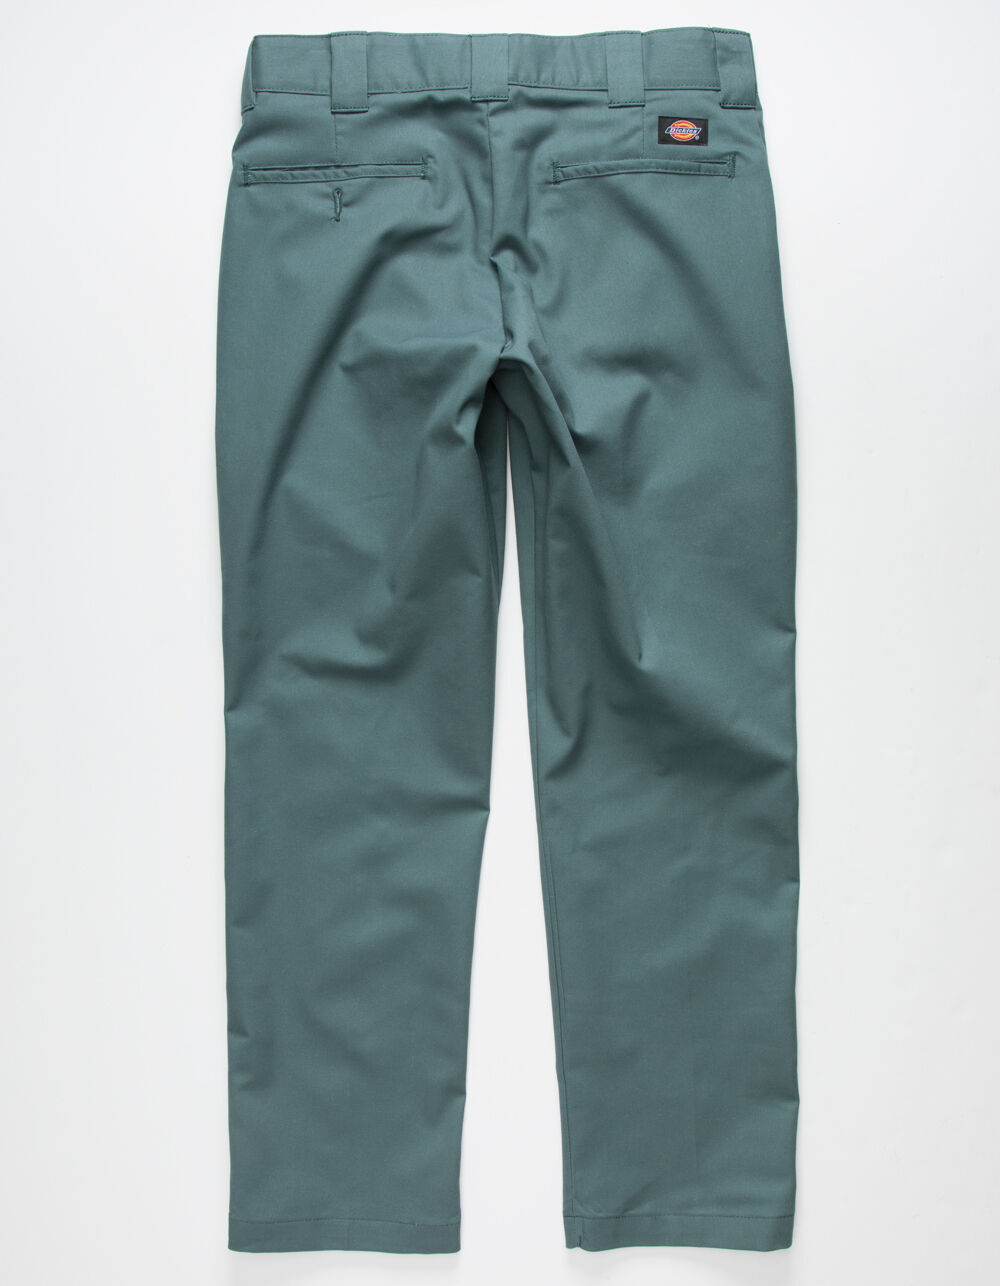 DICKIES SLIM 872 FIT WORK PANT OLIVE GREEN  Dickies Trousers